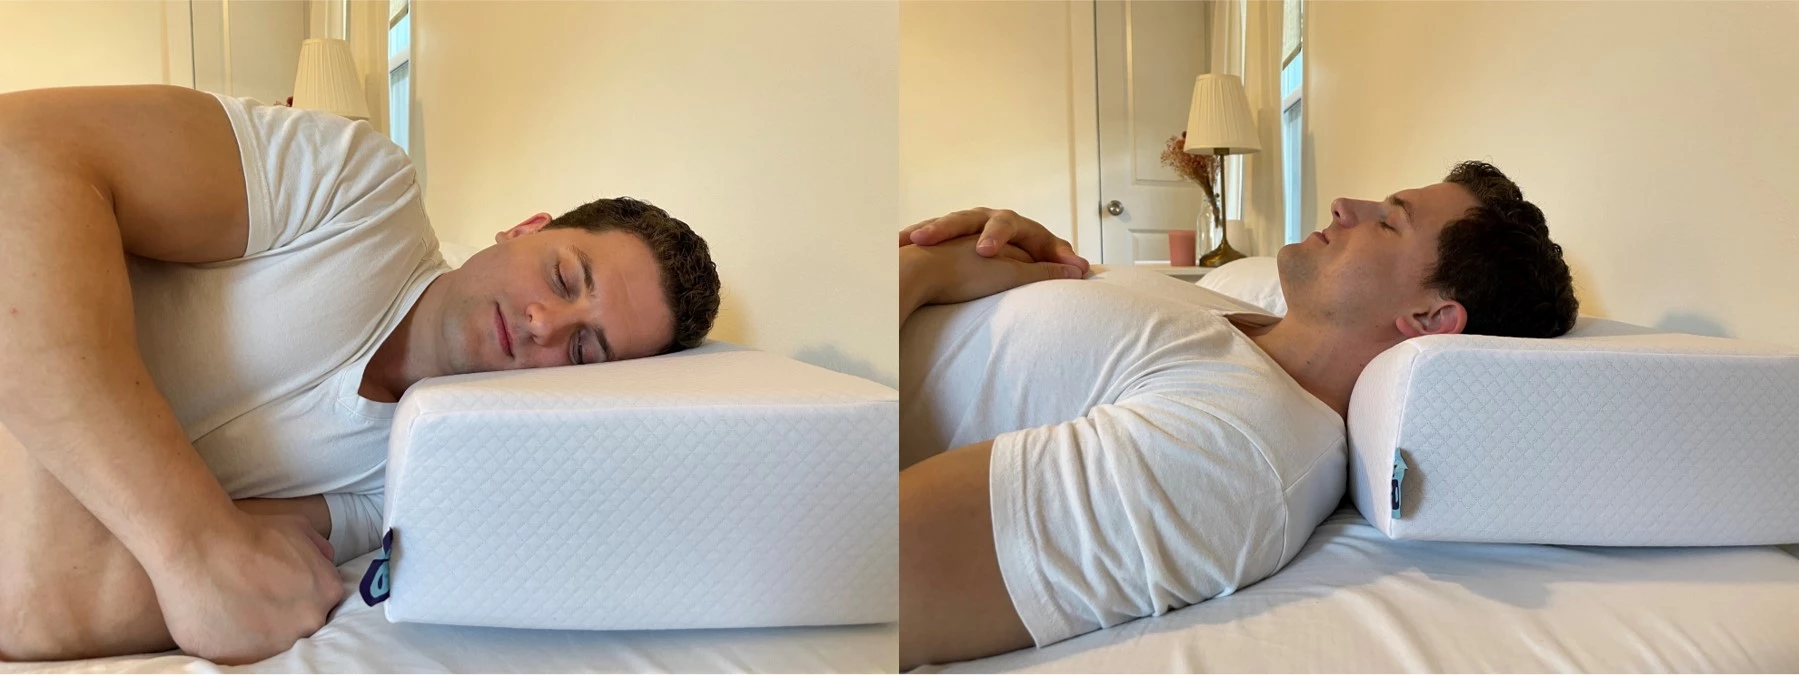 https://pillowspecialist.com/img/pillow-cube-pillow-sleeping.webp